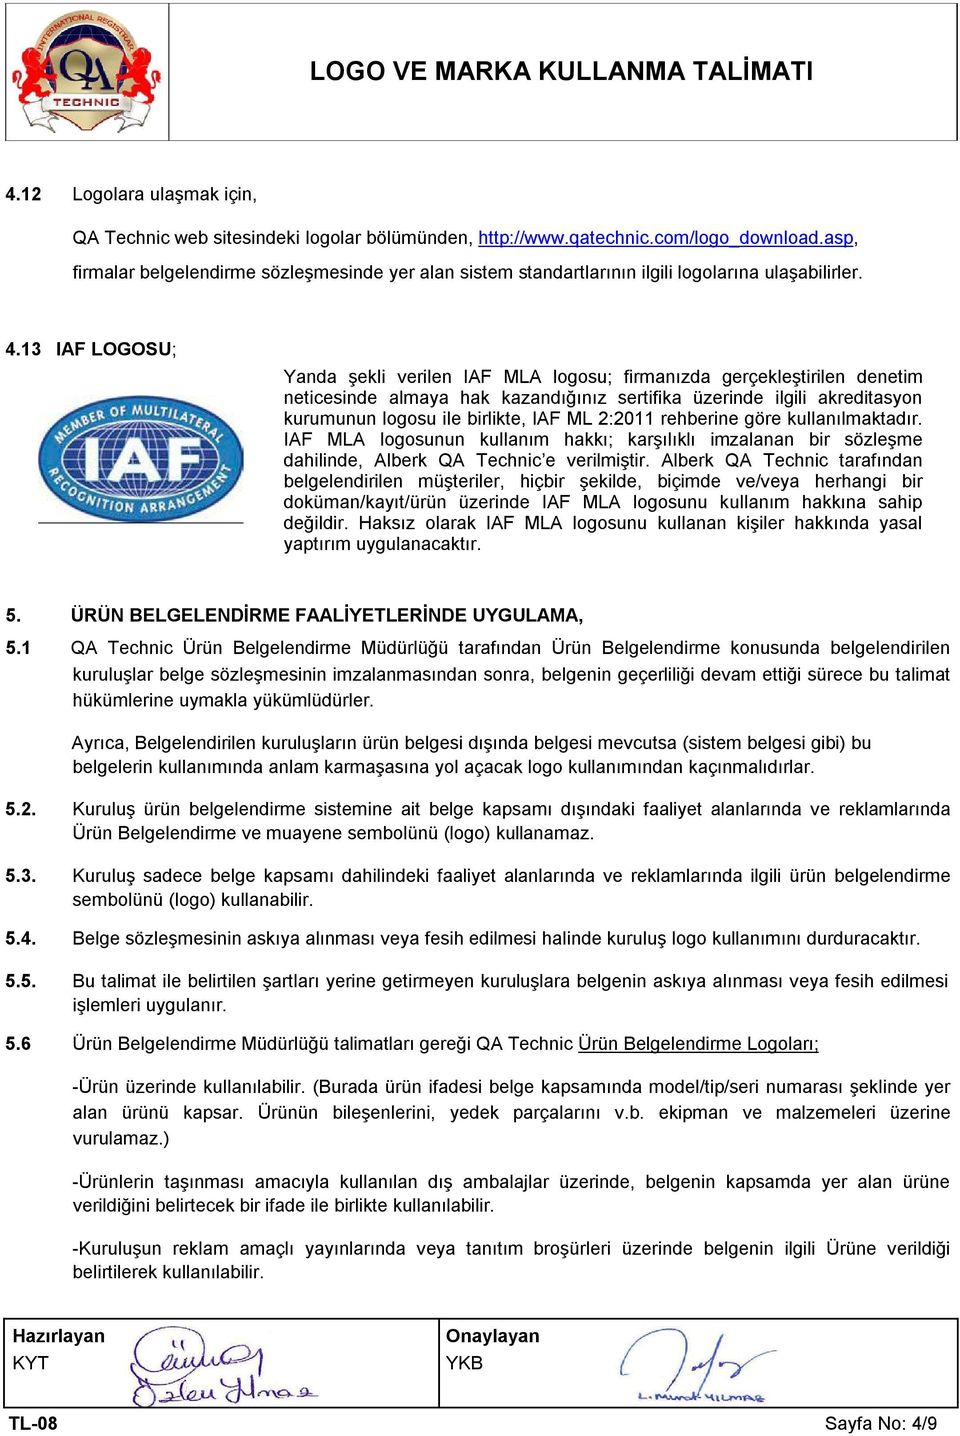 13 IAF LOGOSU; Yanda şekli verilen IAF MLA logosu; firmanızda gerçekleştirilen denetim neticesinde almaya hak kazandığınız sertifika üzerinde ilgili akreditasyon kurumunun logosu ile birlikte, IAF ML